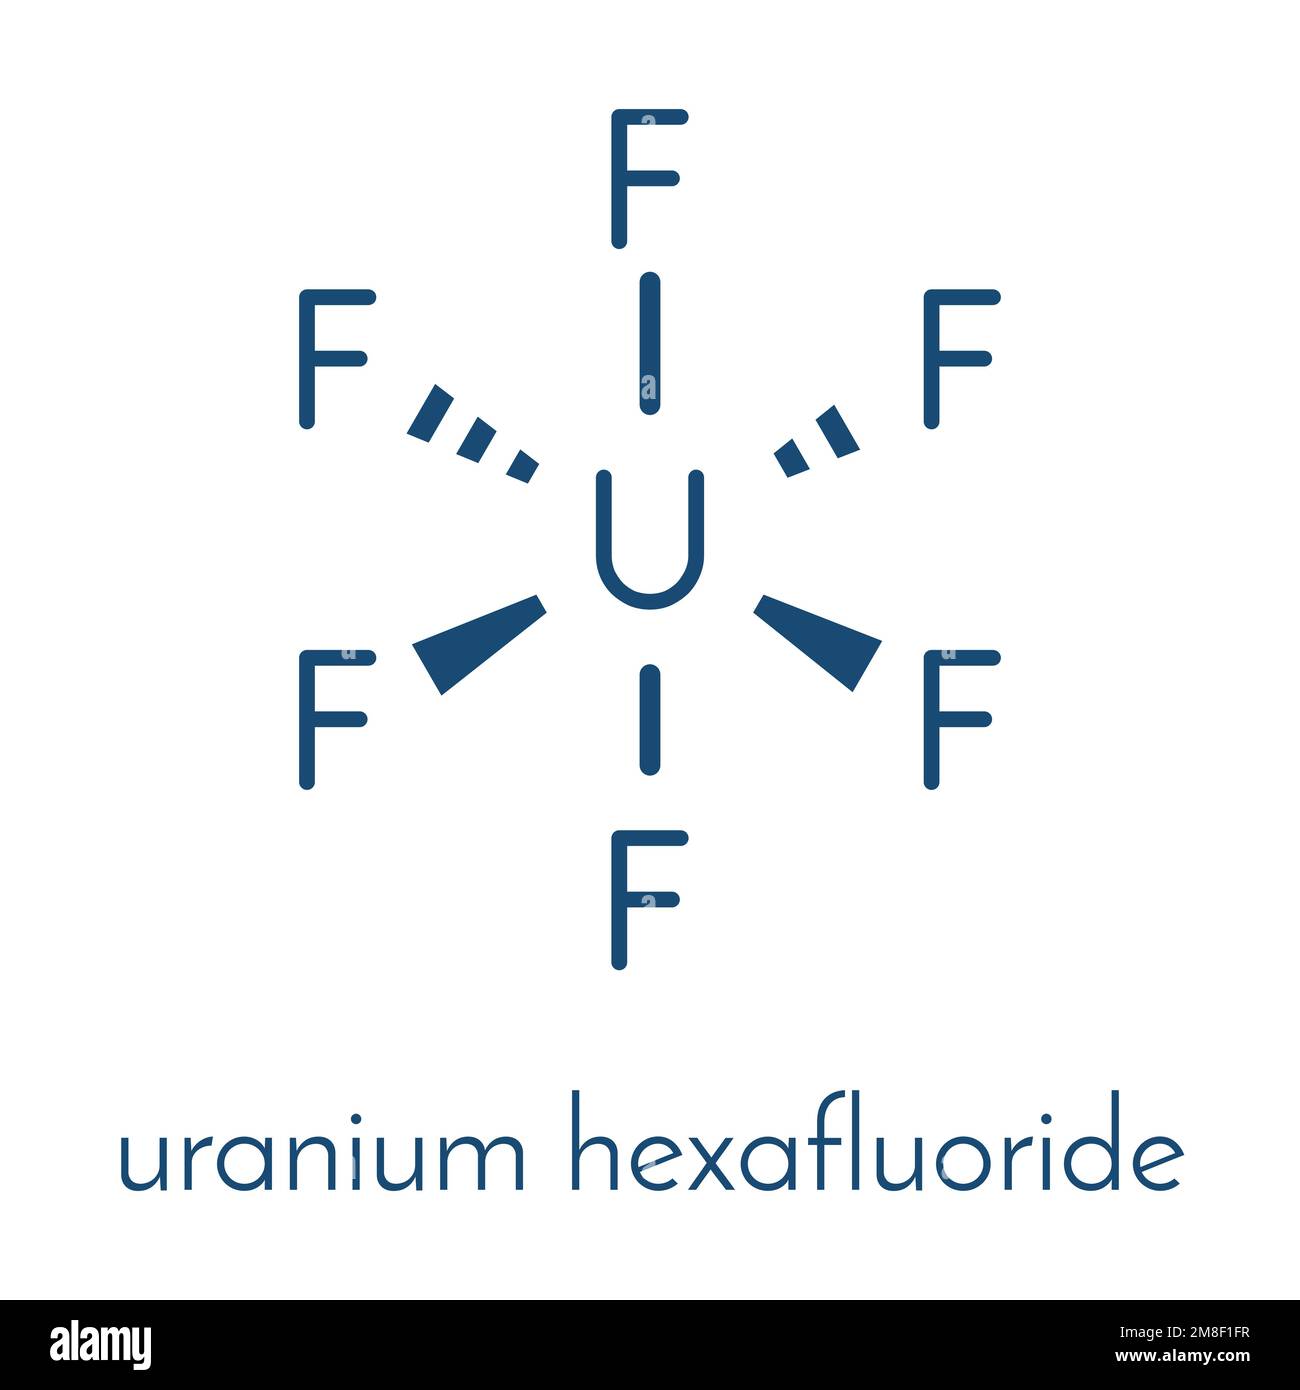 Uranium hexafluoride. Volatile uranium compound that is used for uranium enrichment in gas centrifuges. Skeletal formula. Stock Vector